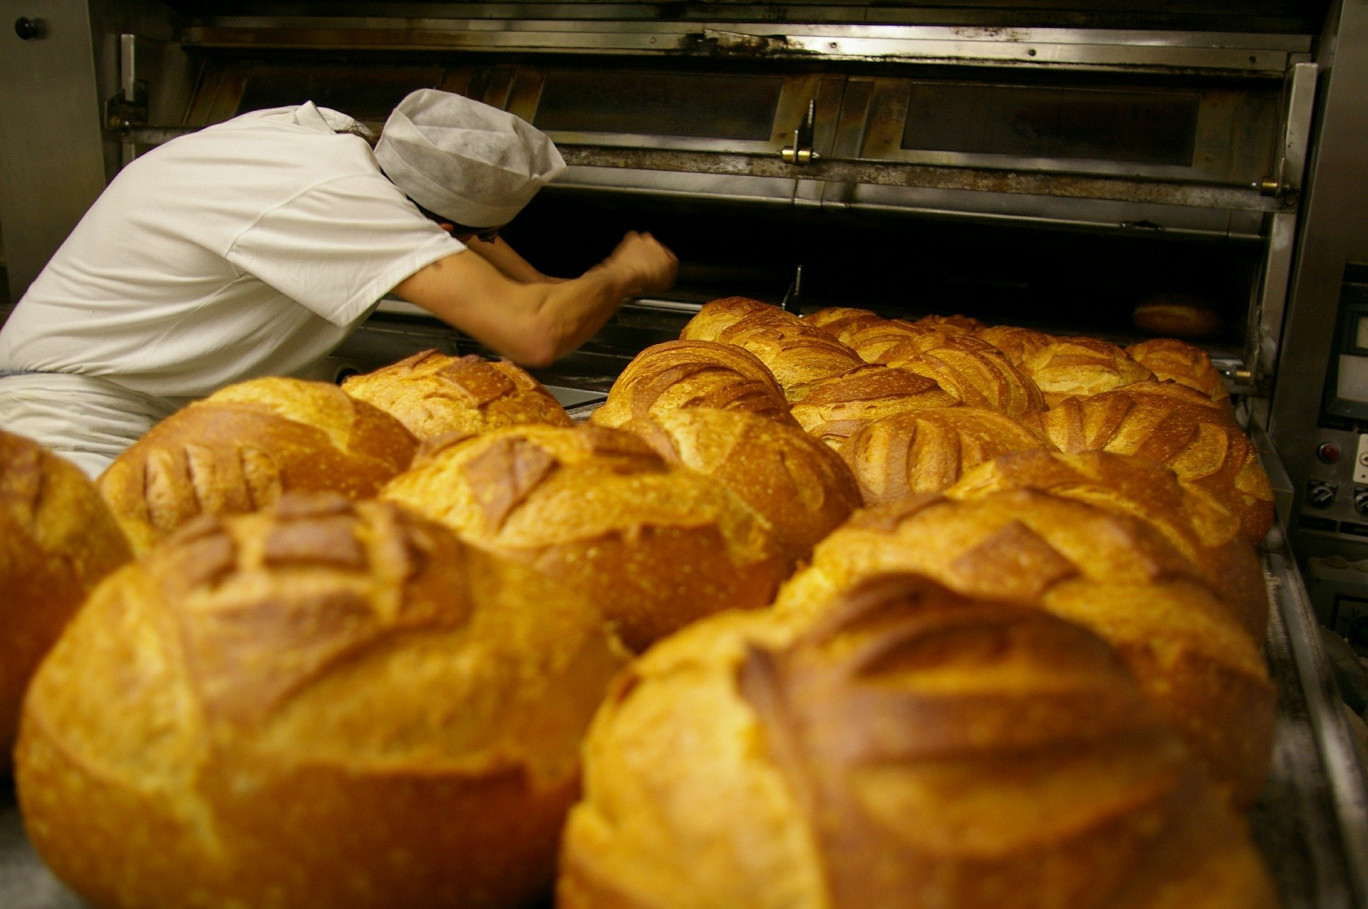 Cet été, une centaine d'offres à pouvoir en Moselle sur le site de Pôle emploi concerne le métier de boulanger-pâtissier. 